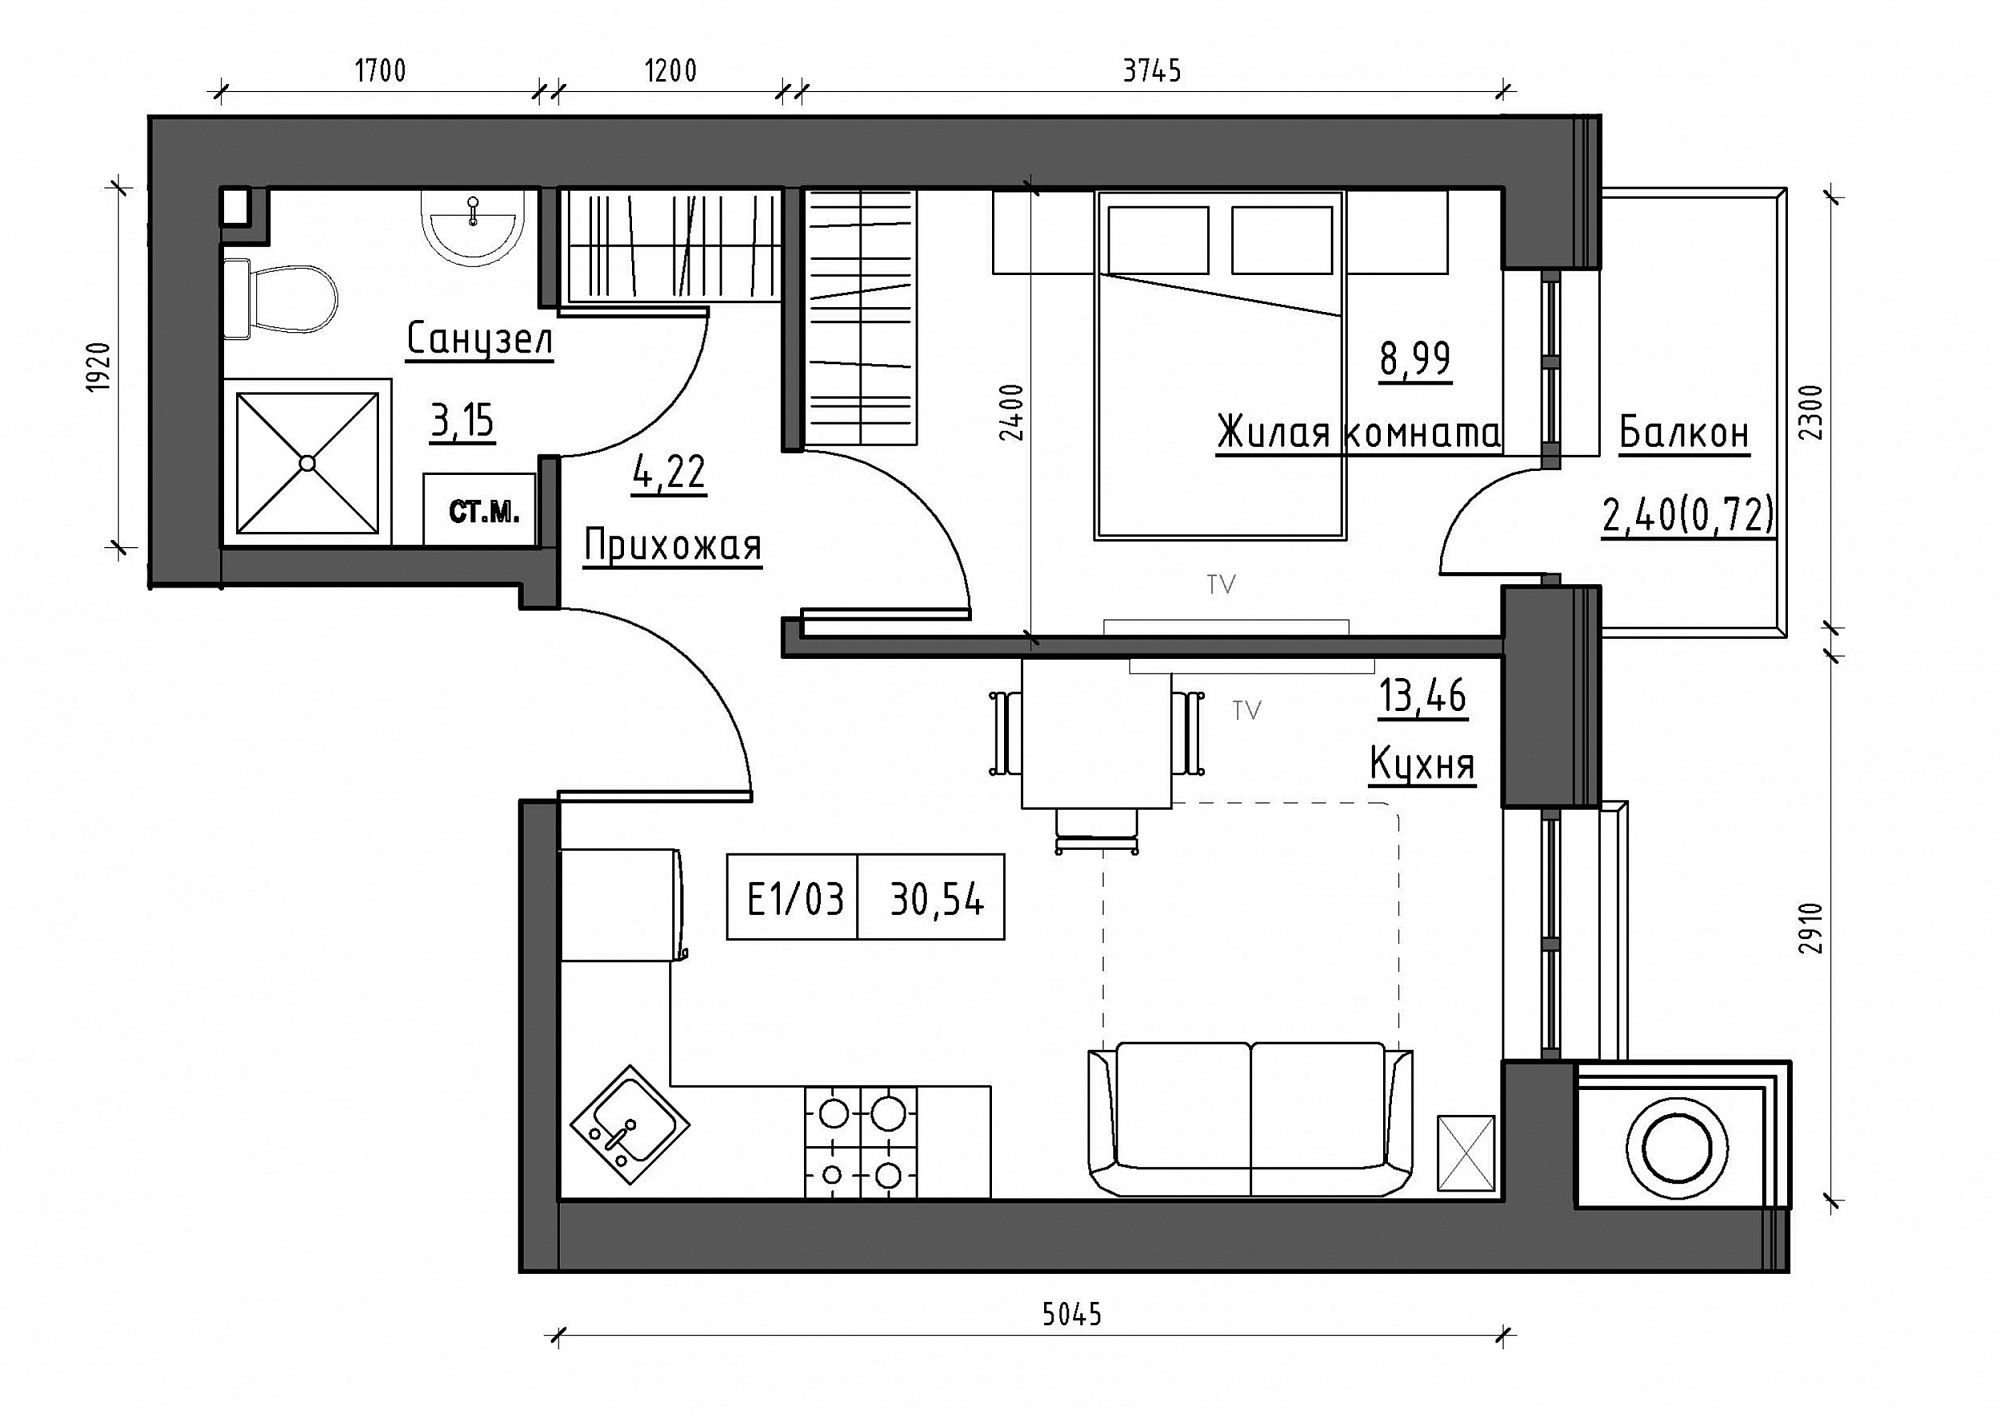 Планировка 1-к квартира площей 30.58м2, KS-012-02/0013.